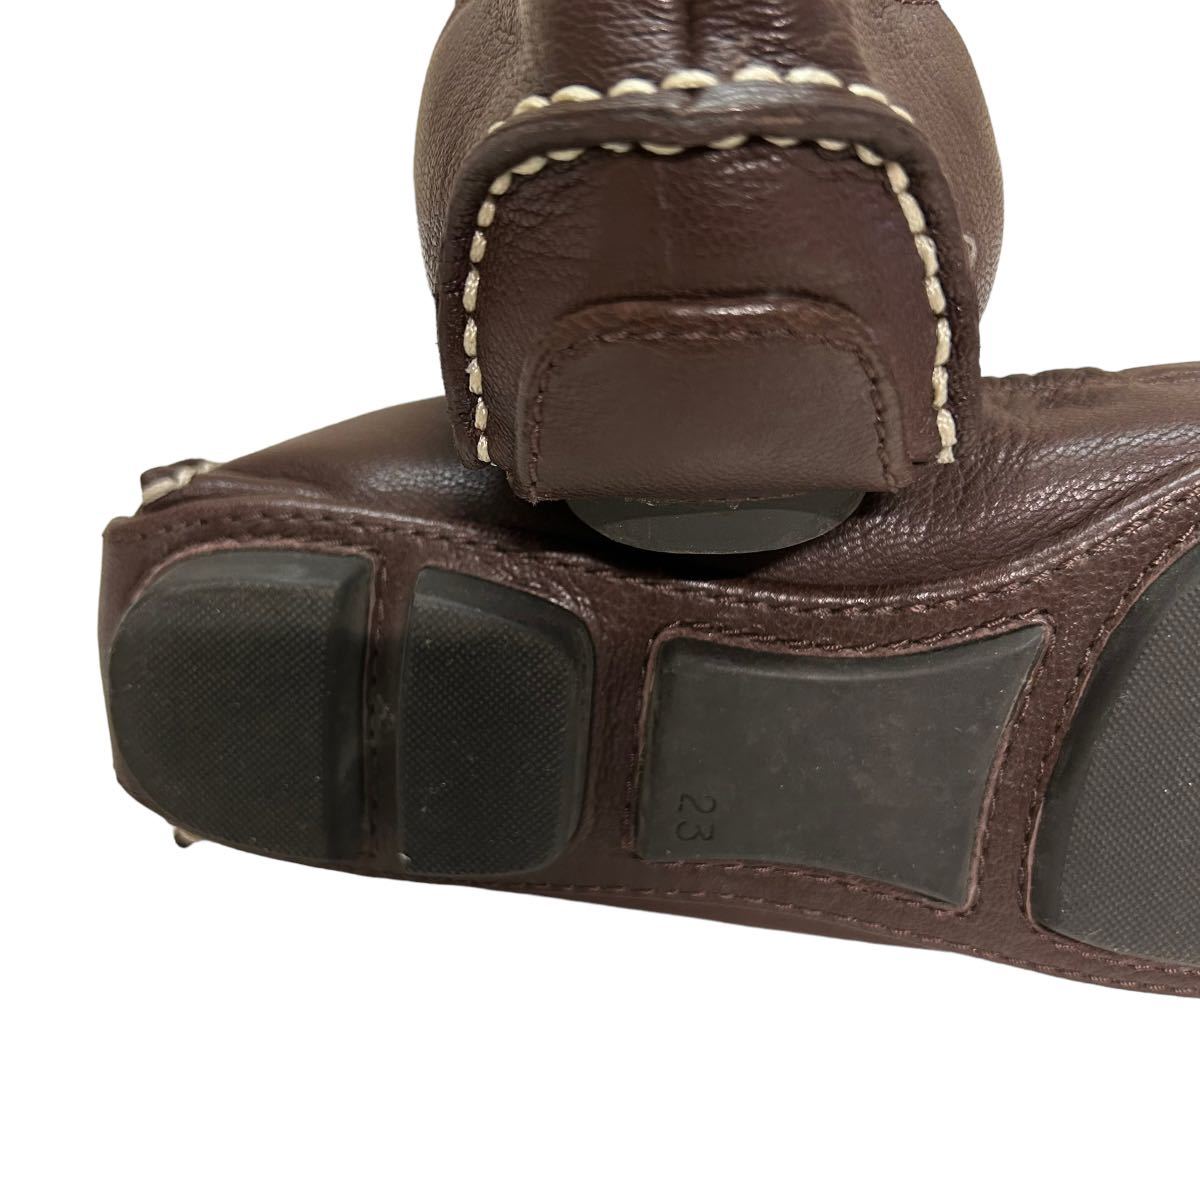 BB800 REGAL Reagal женский обувь для вождения Loafer туфли-лодочки 23cm Brown кожа 